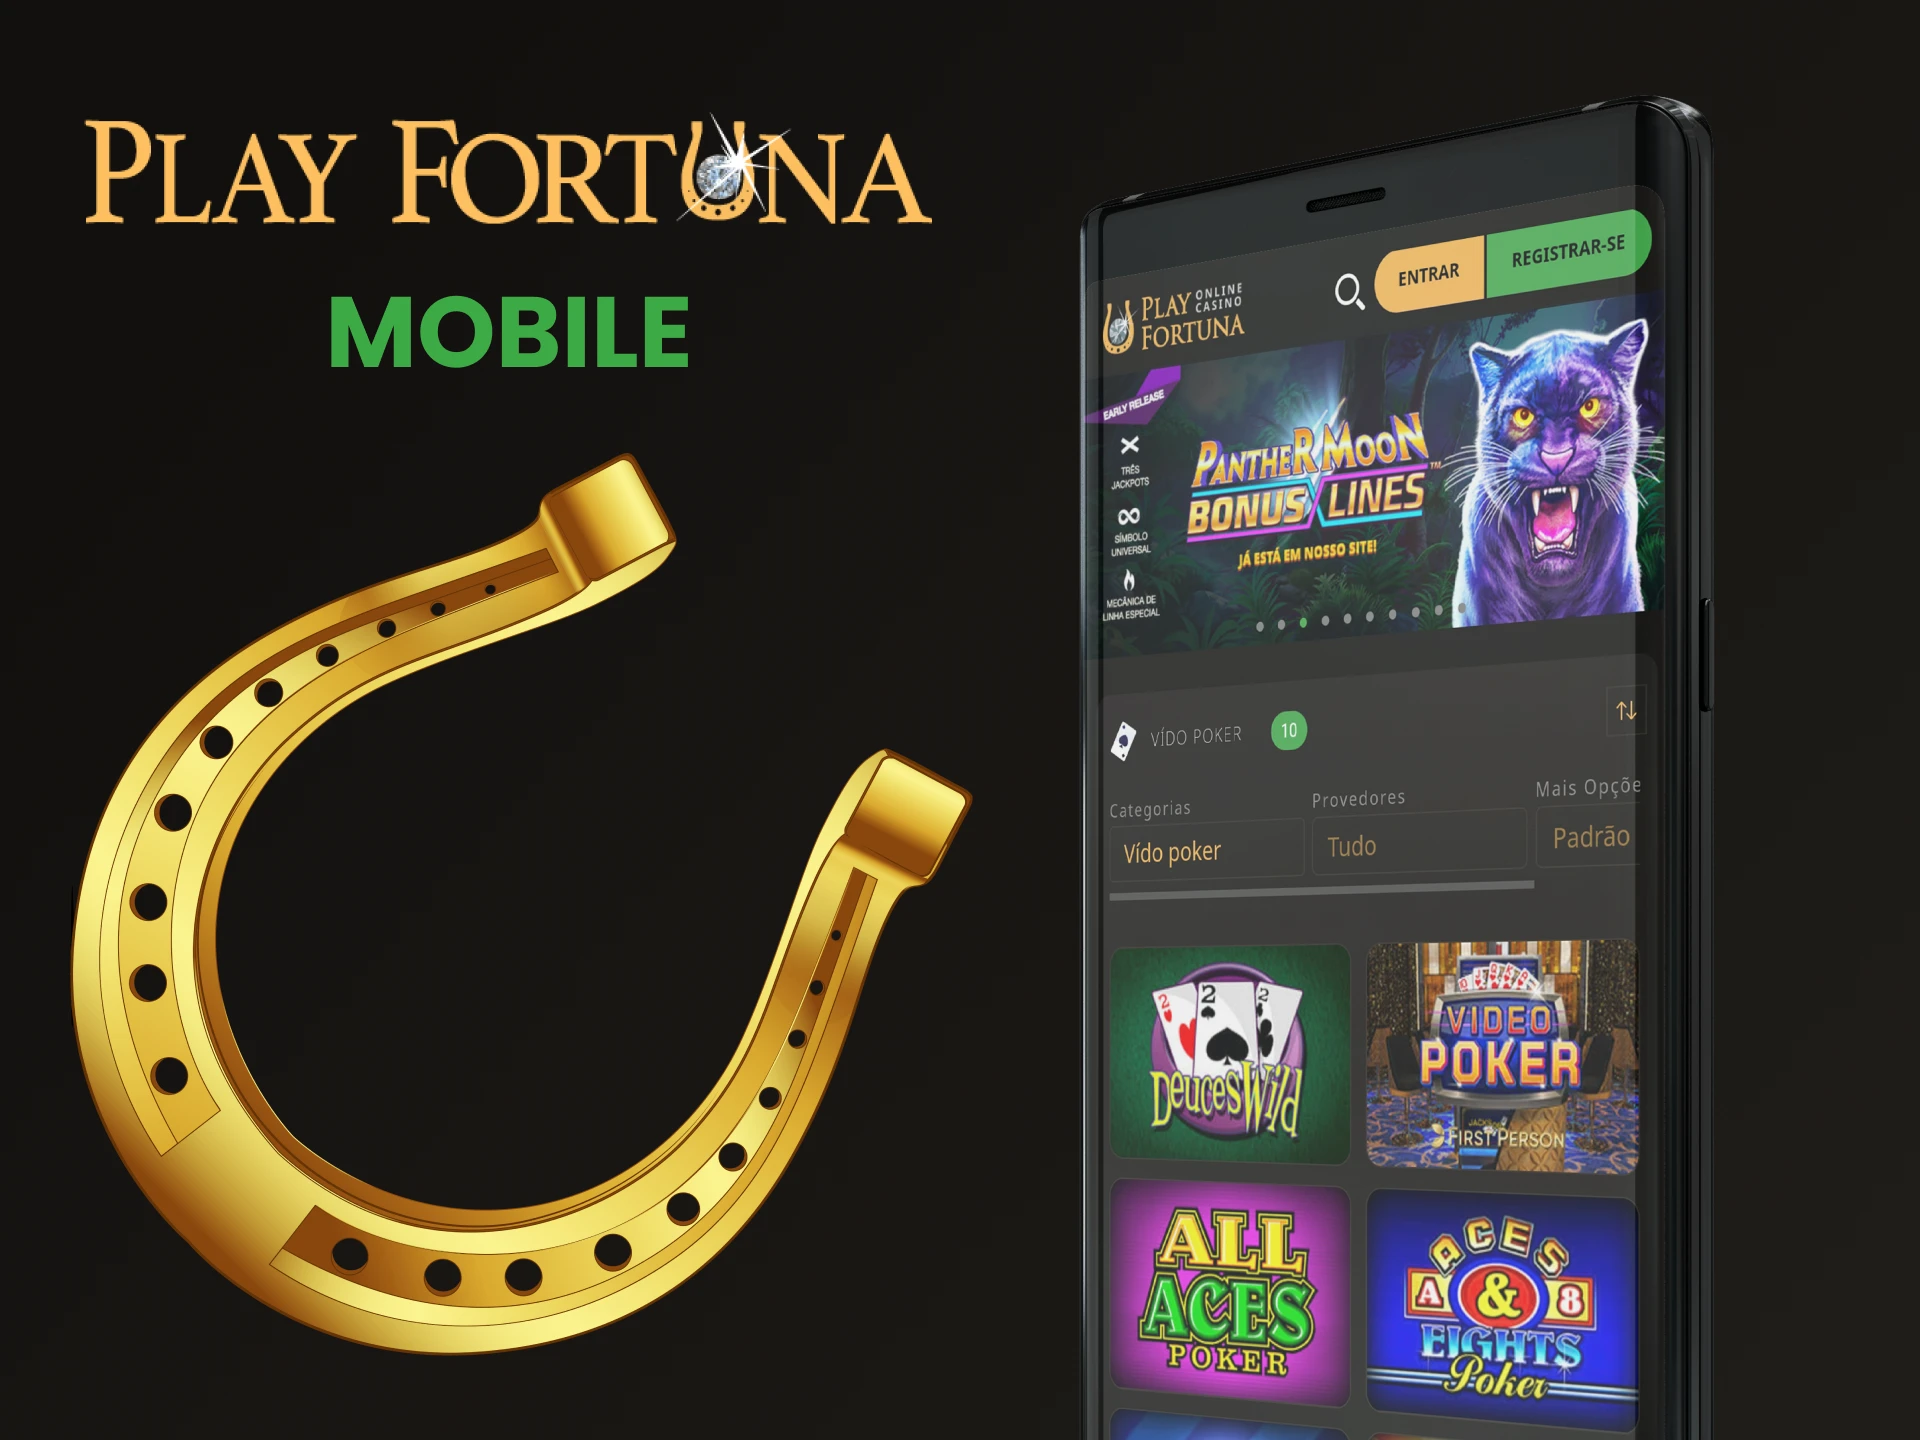 Você pode jogar vídeo pôquer através do aplicativo Play Fortuna.